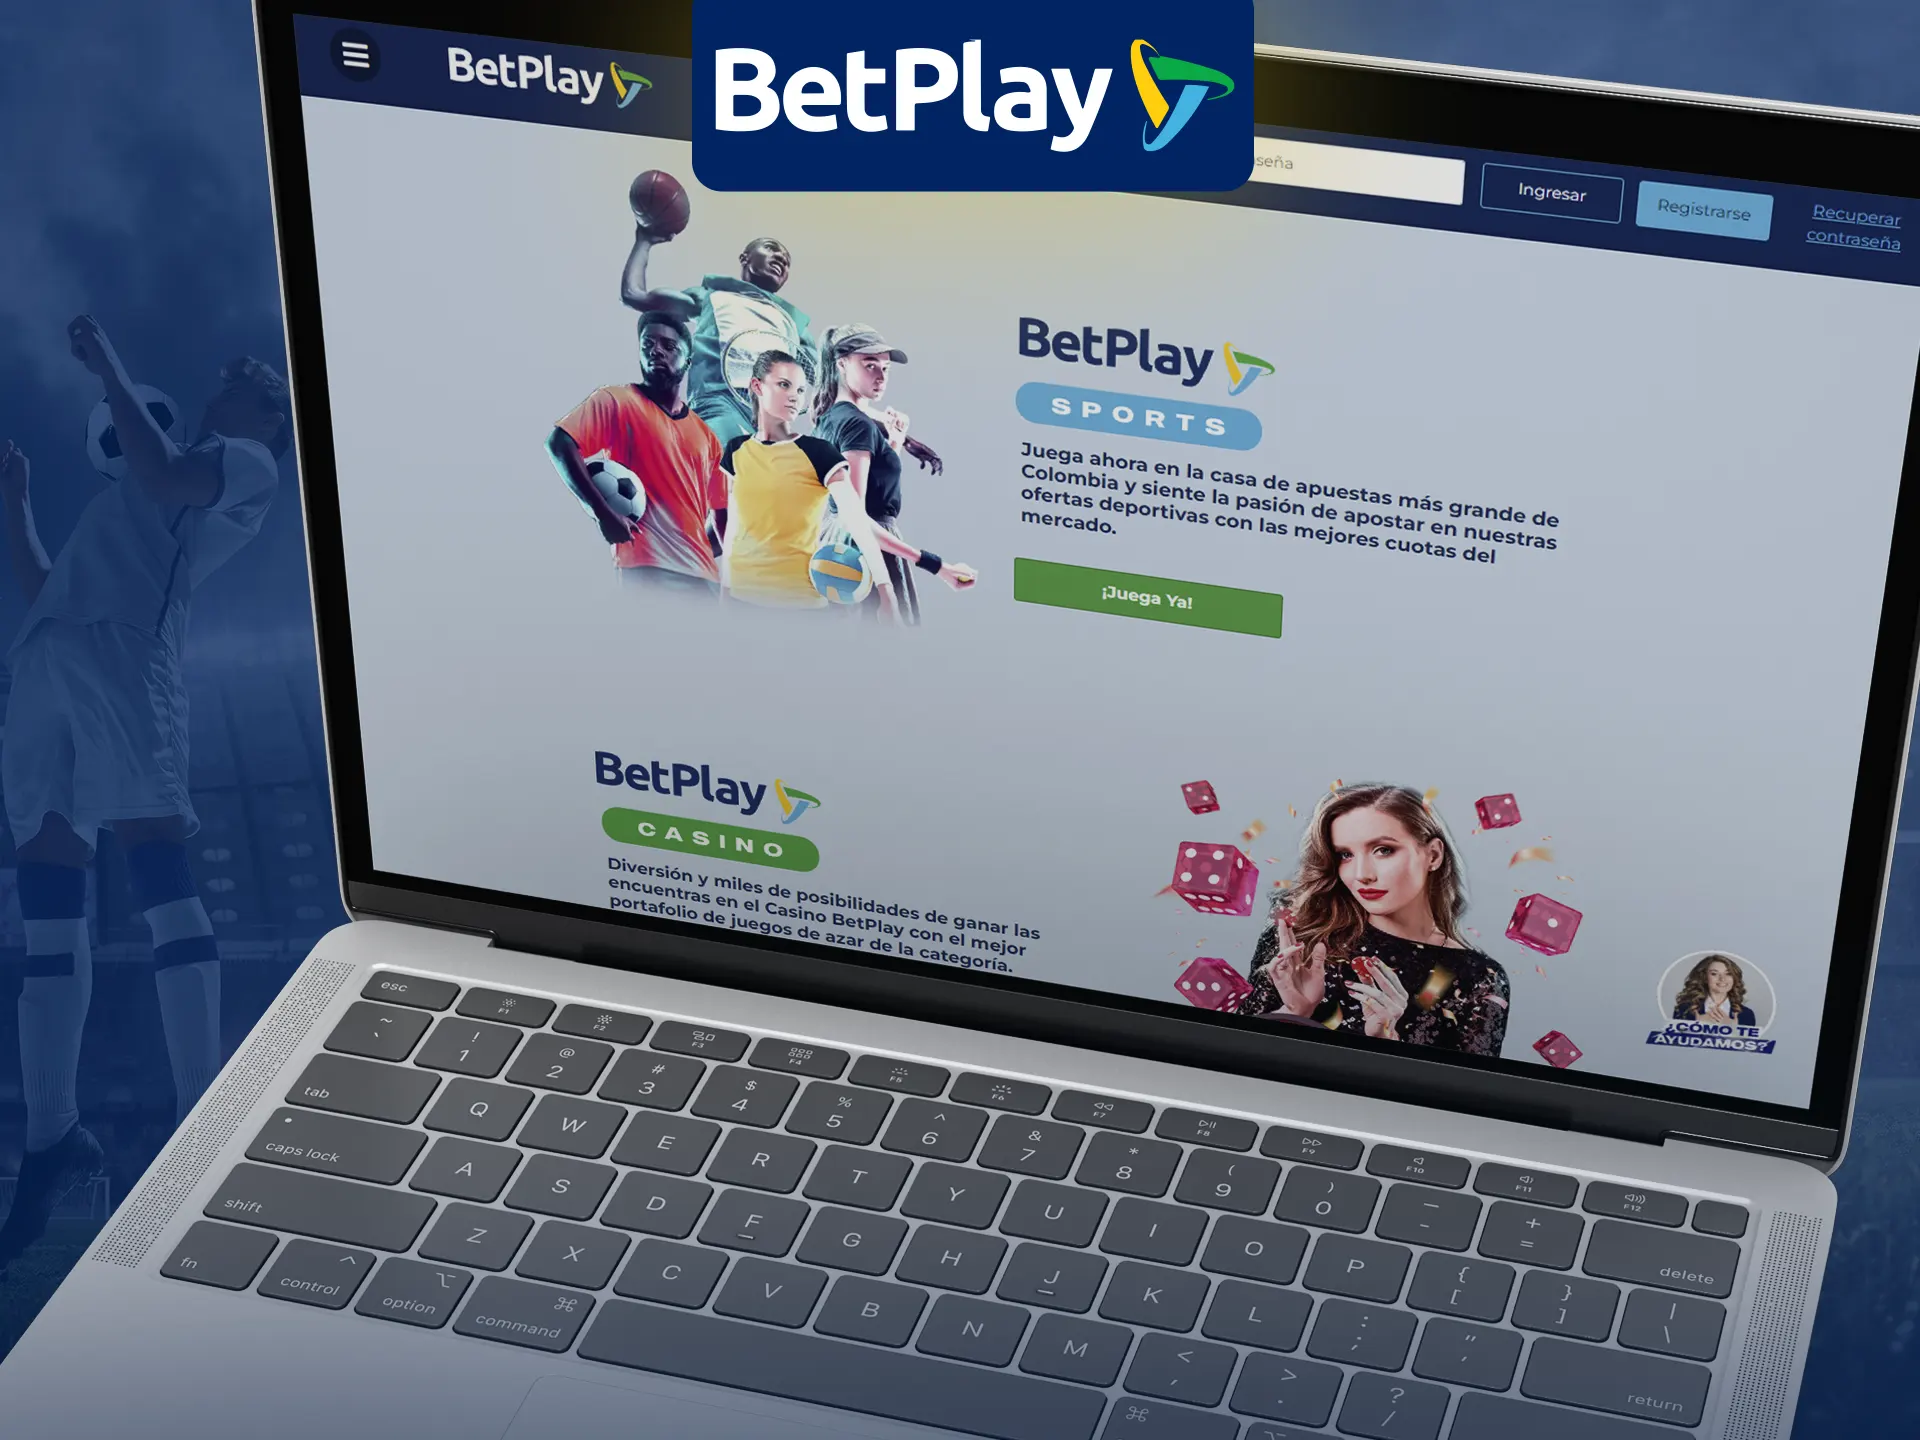 BetPlay en Colombia ofrece apuestas legales y entretenimiento.